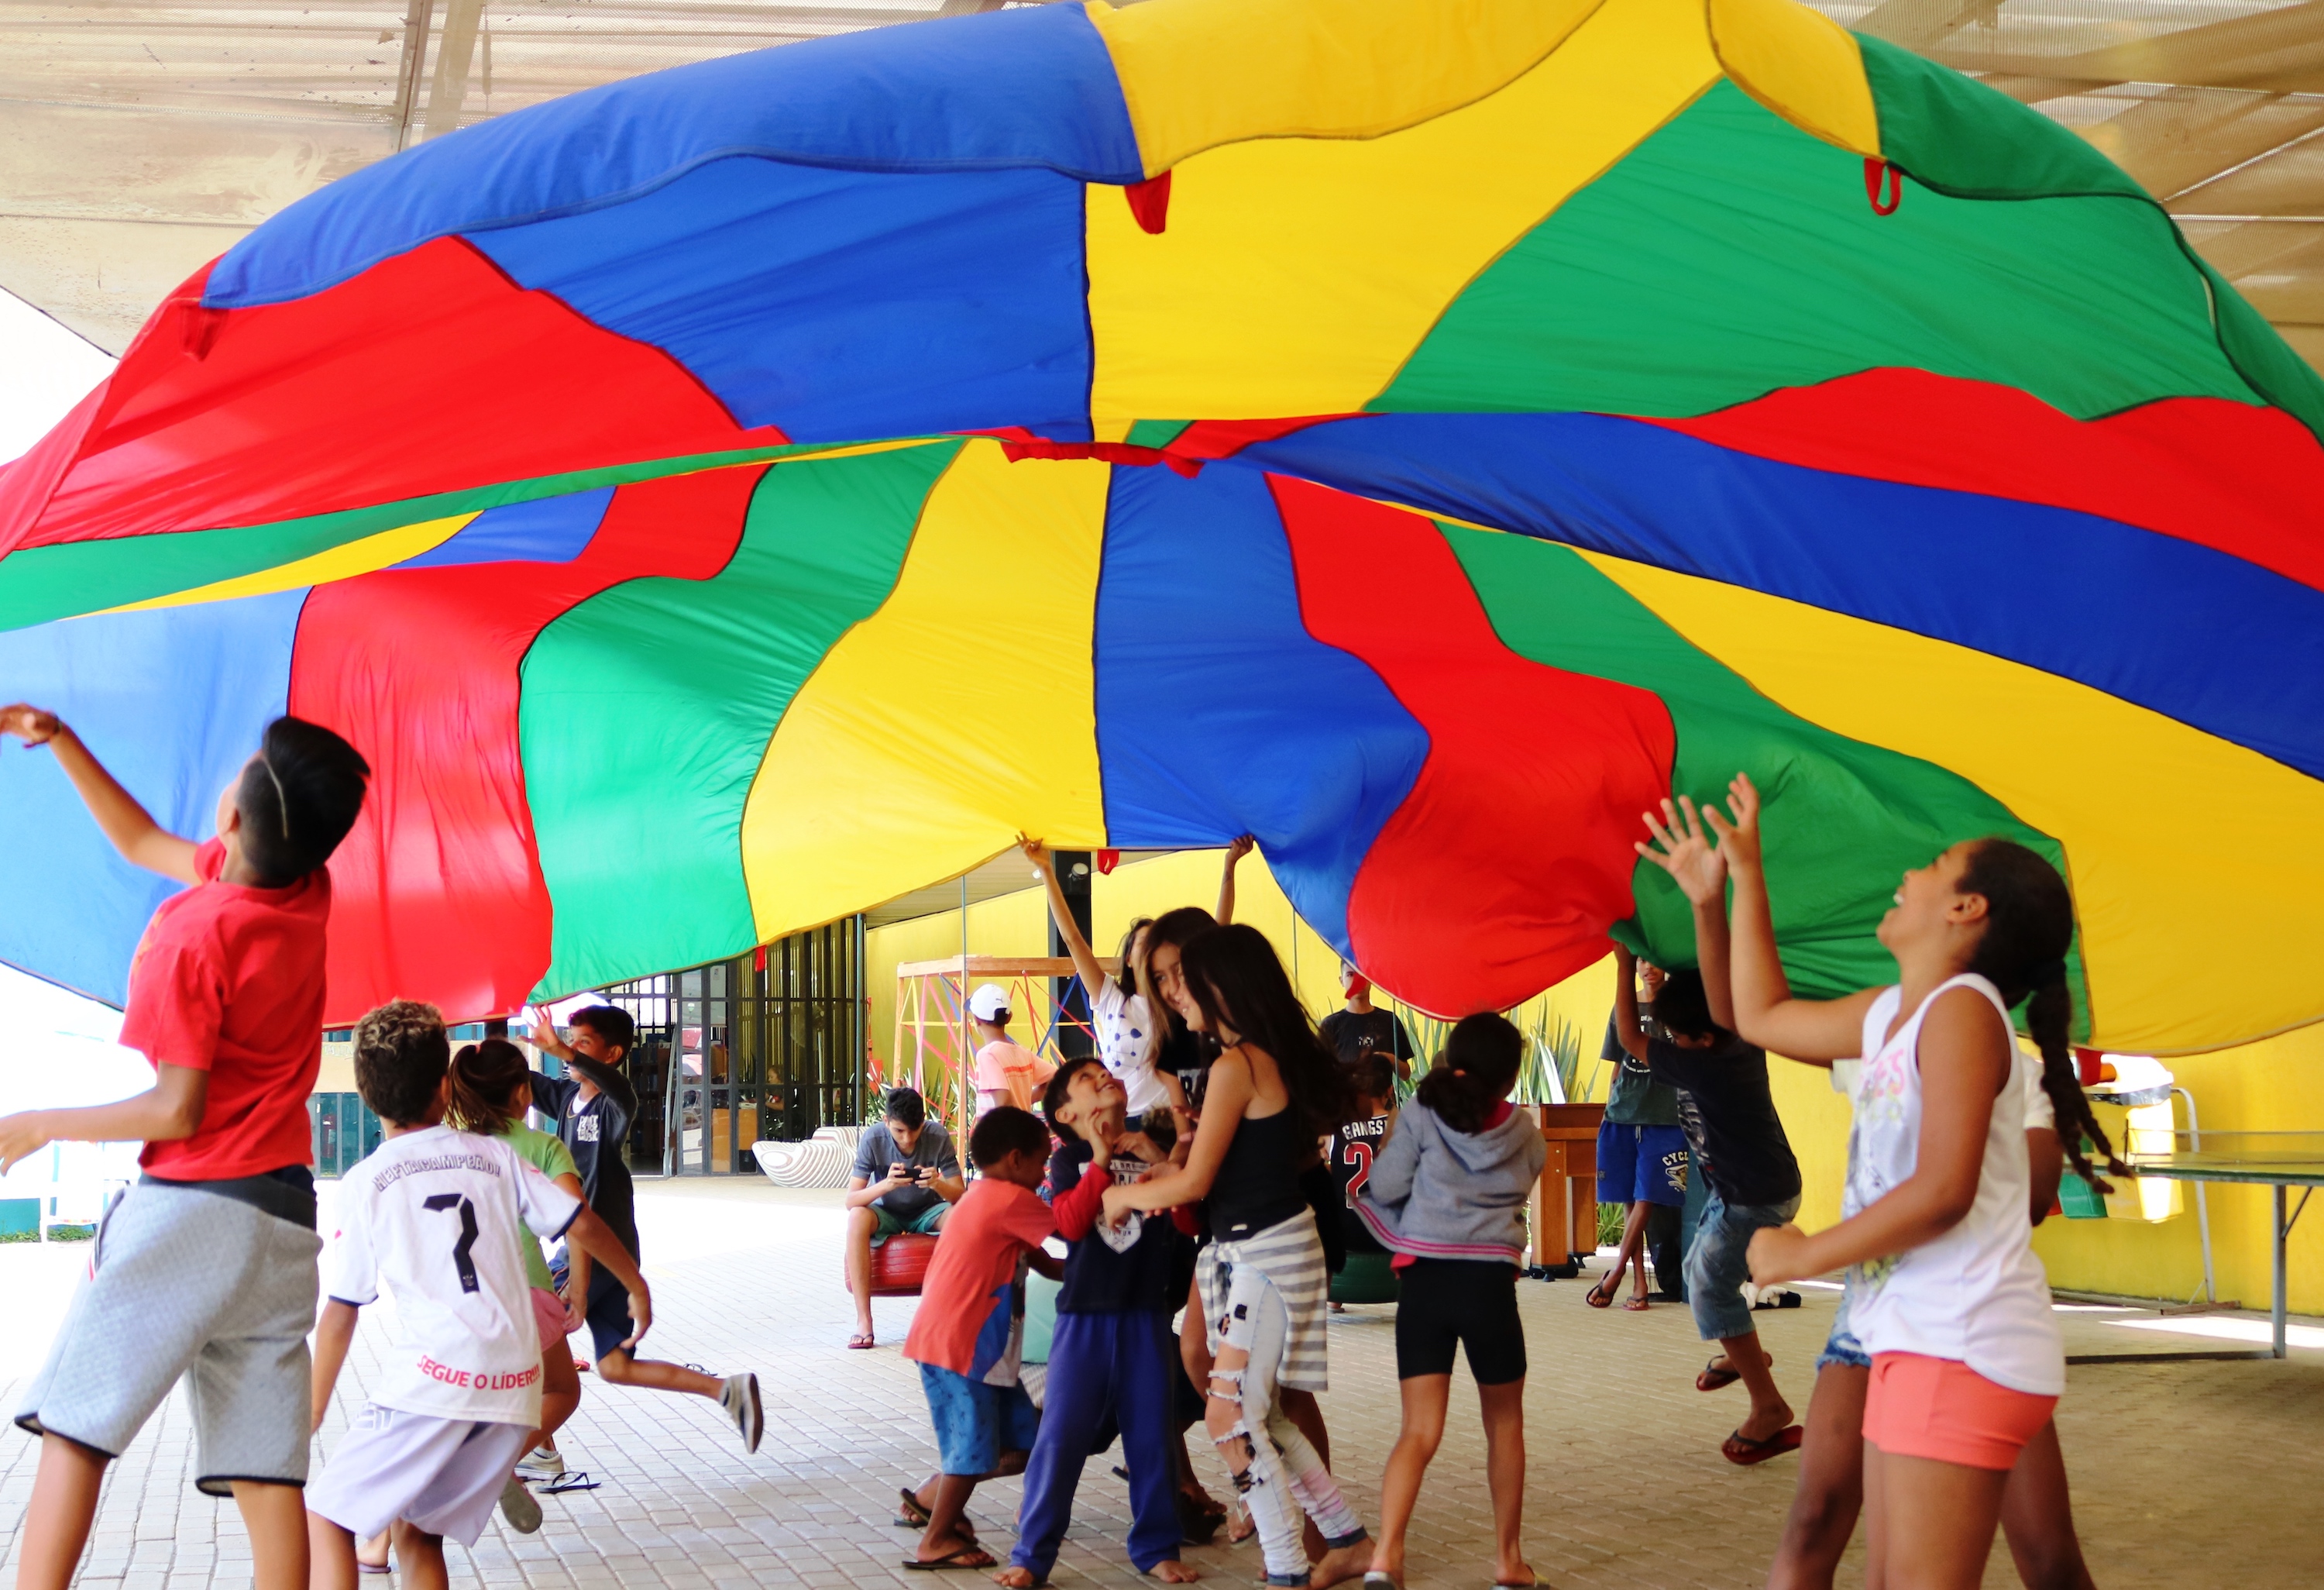 Crian\xe7as e adolescentes brincam embaixo de uma grande tenda colorida, amarela, vermelha, azul e verde.